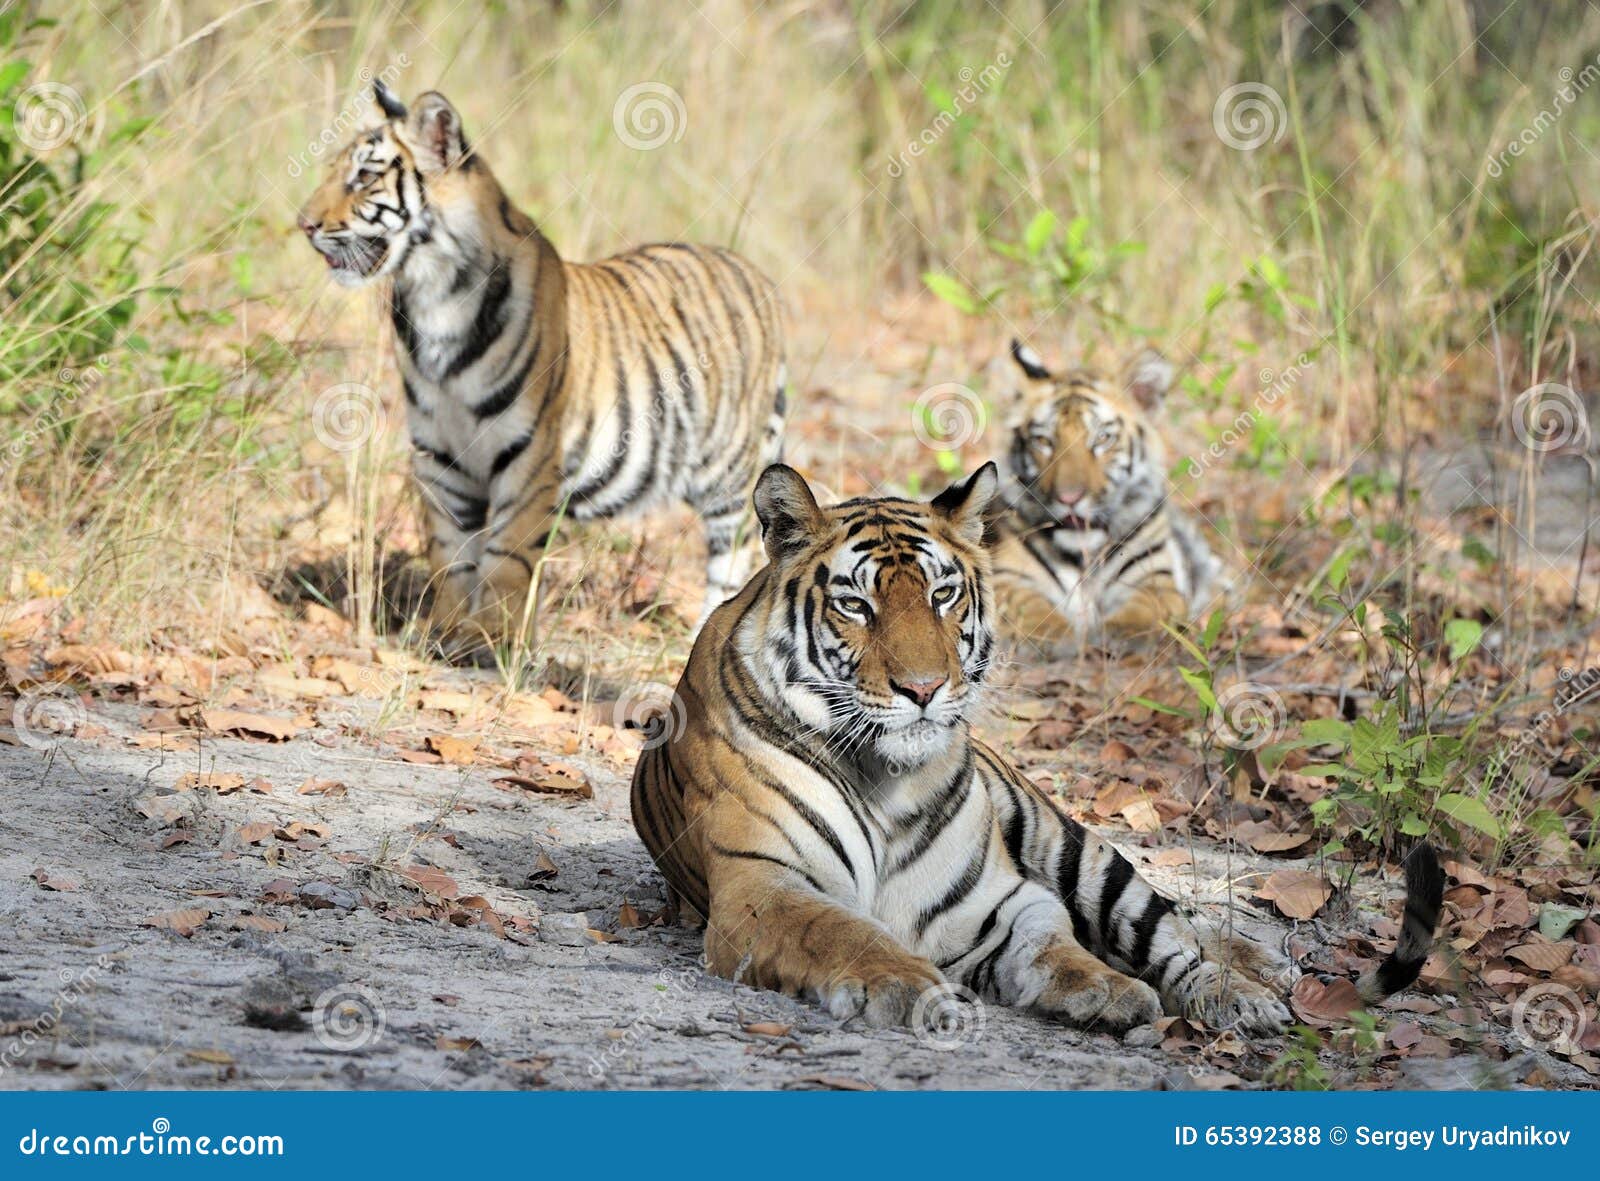 tigress and cubs.